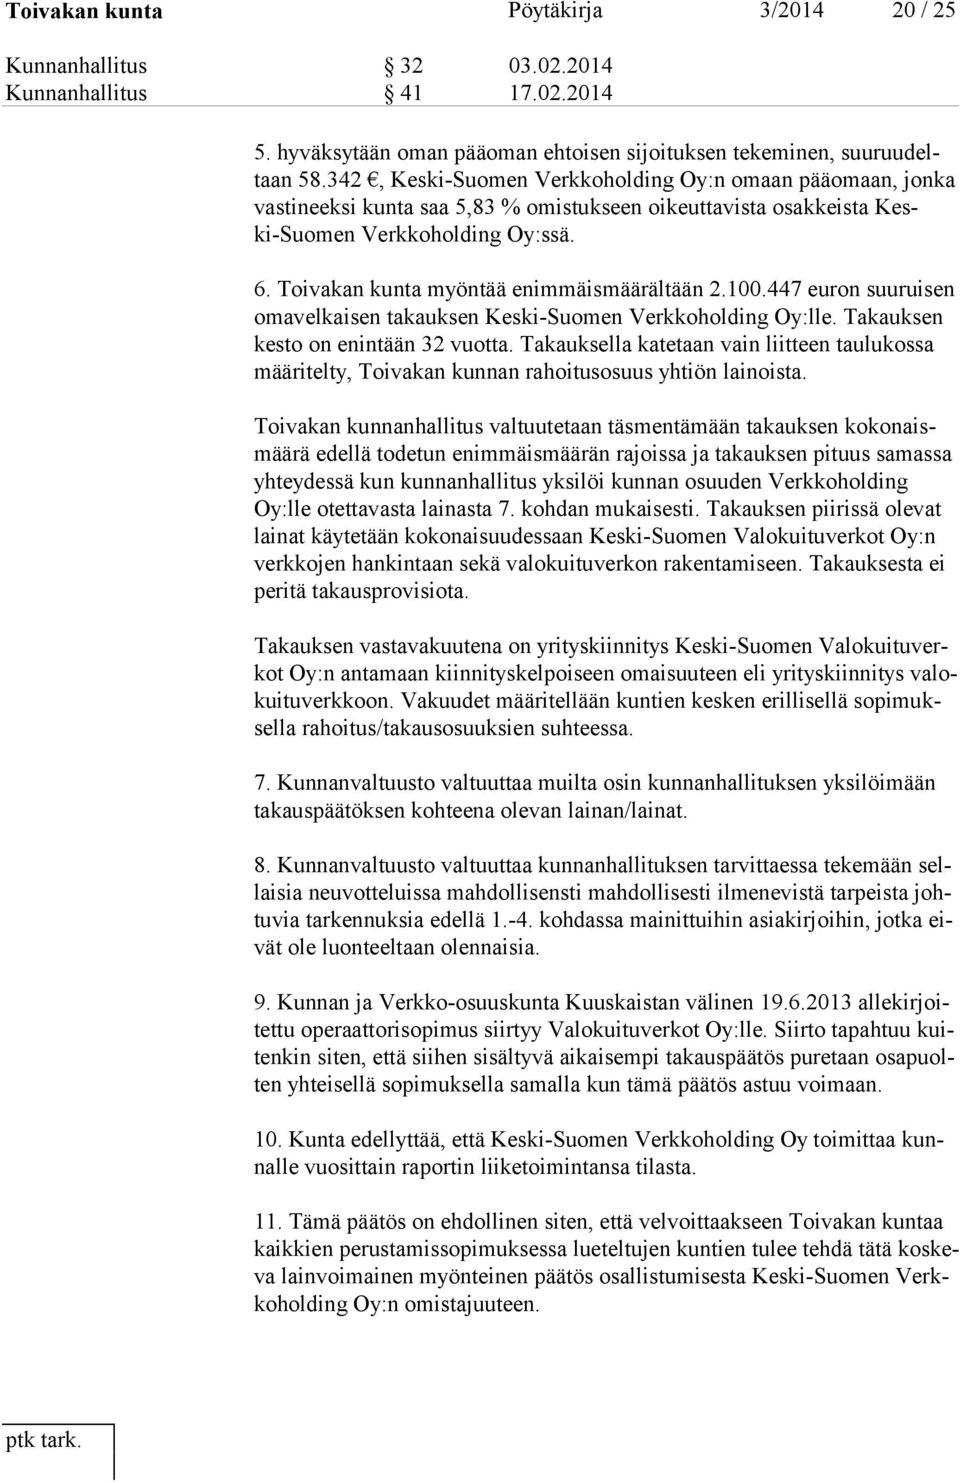 Toivakan kunta myöntää enimmäismäärältään 2.100.447 euron suuruisen omavelkaisen takauksen Keski-Suomen Verkkoholding Oy:lle. Takauksen kesto on enintään 32 vuotta.